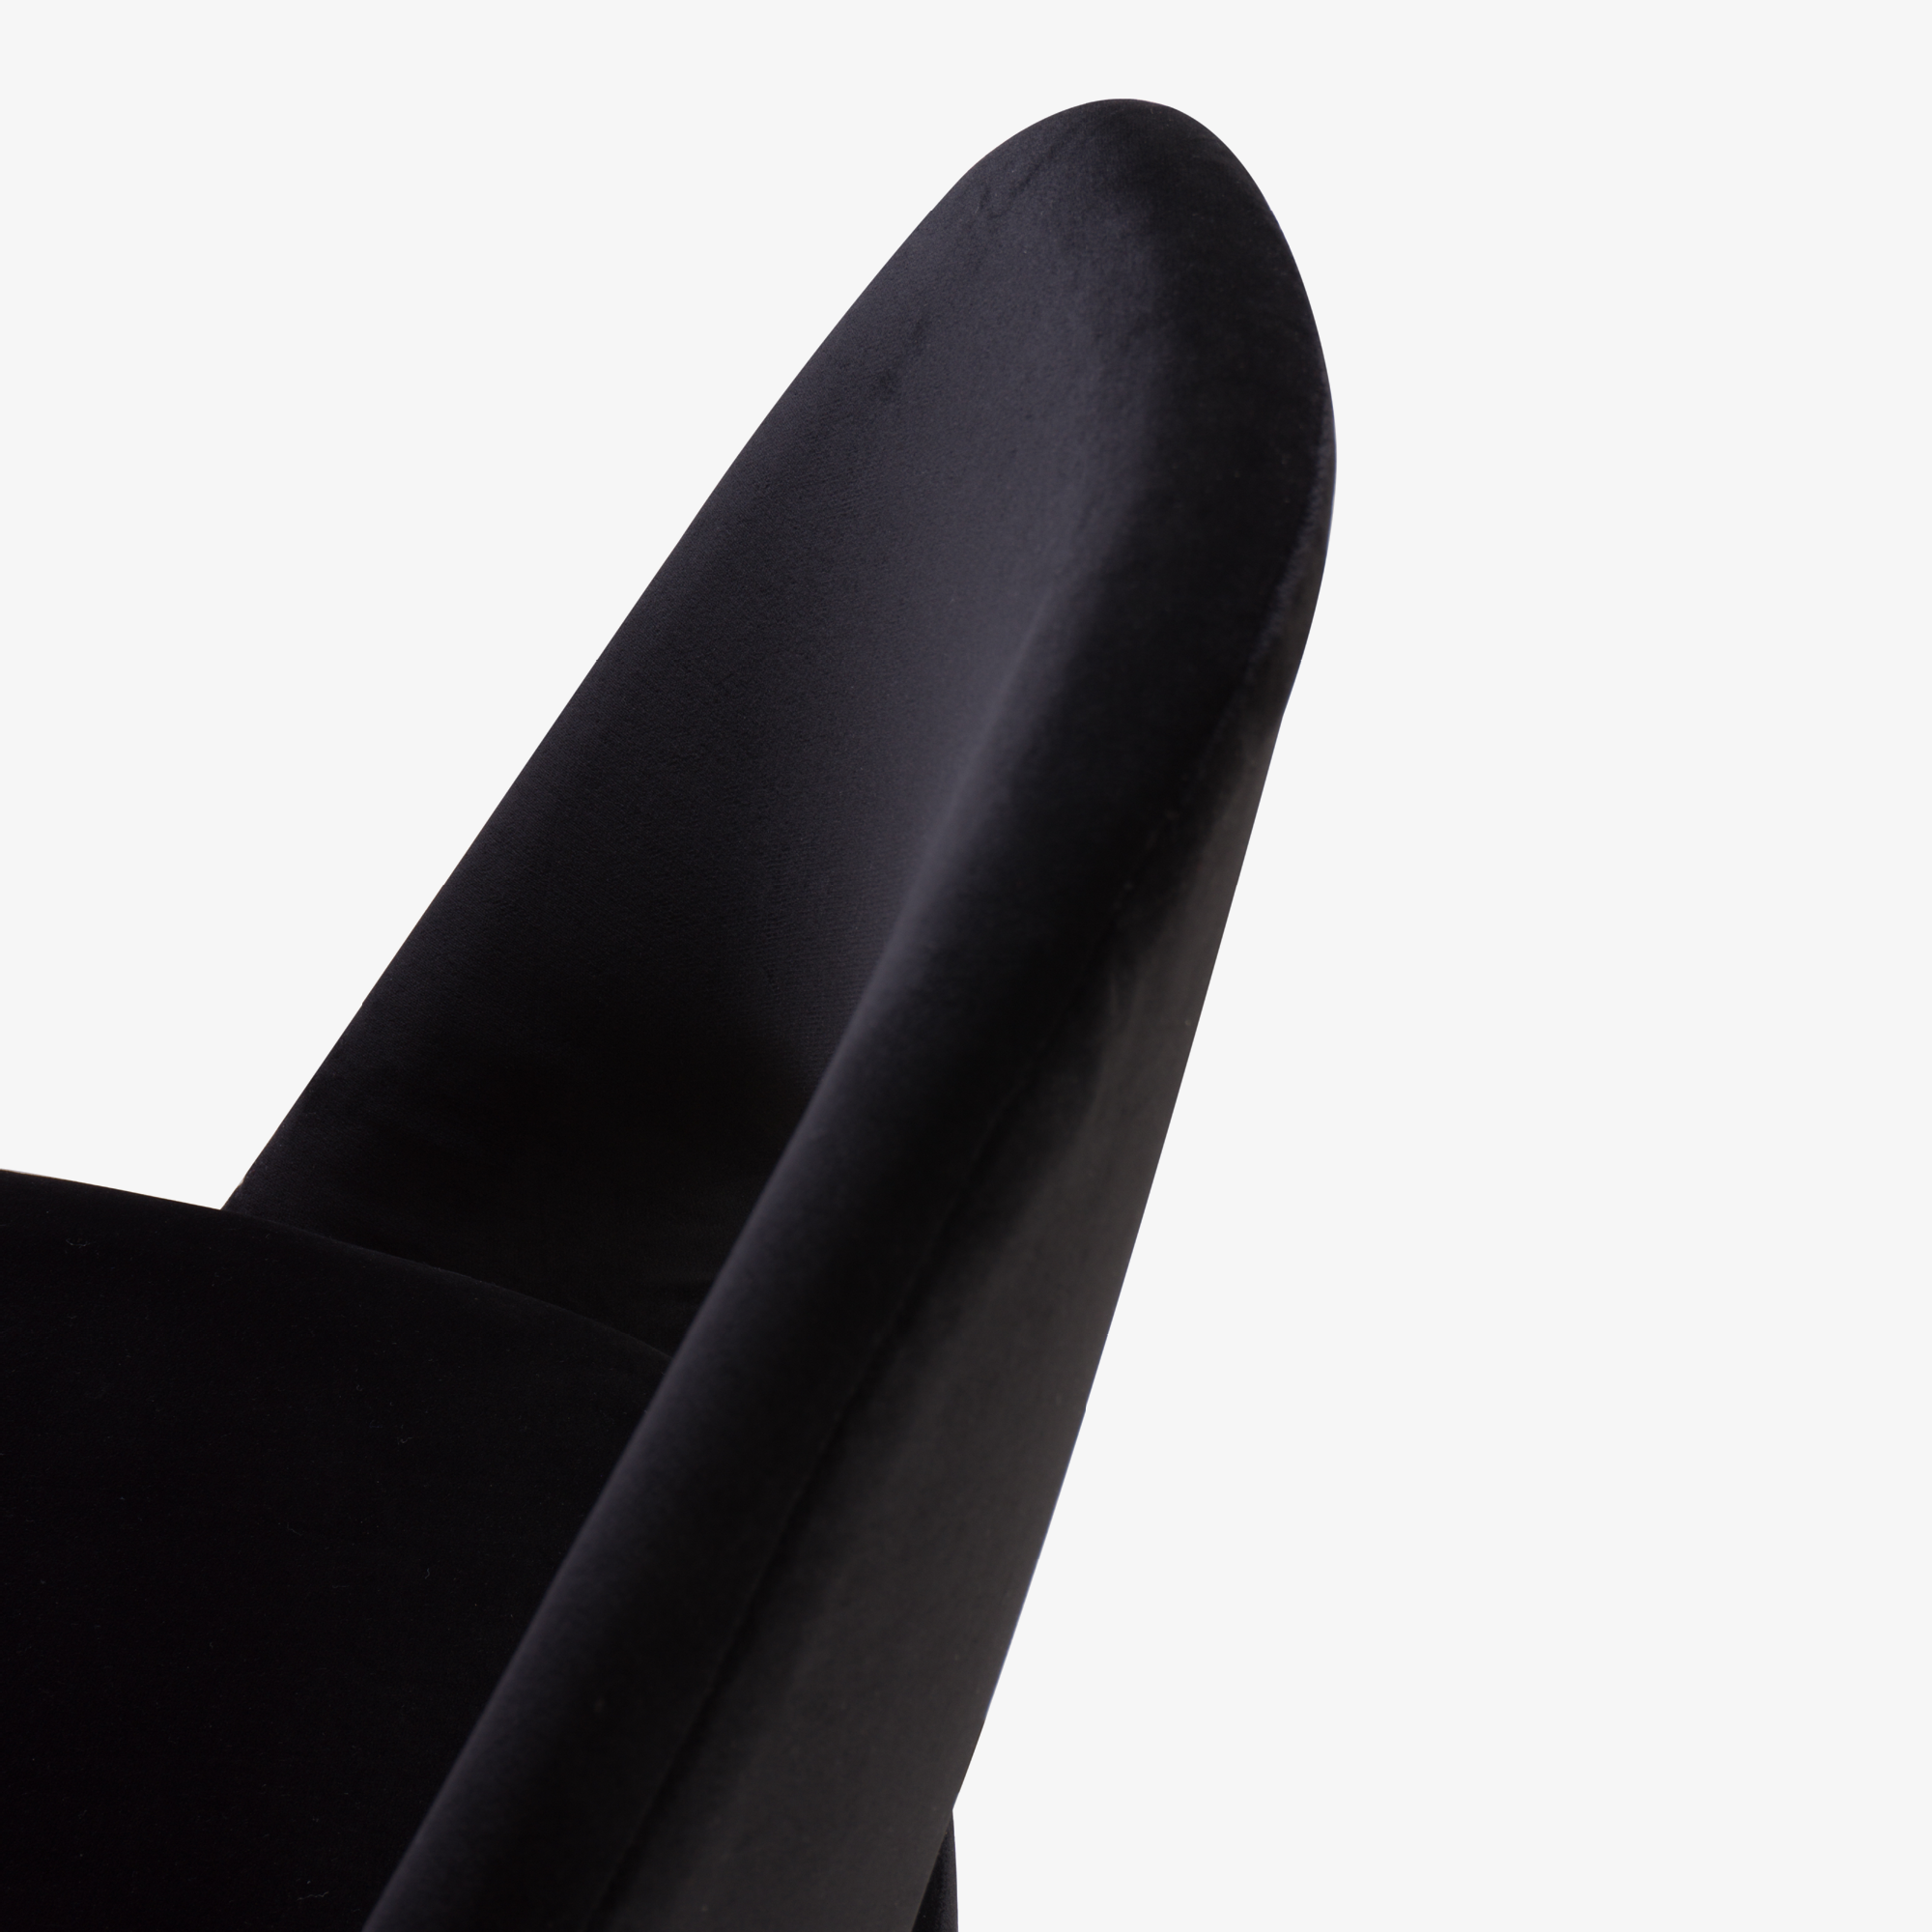 Knoll Saarinen Executive Armless Chair, Black Edition